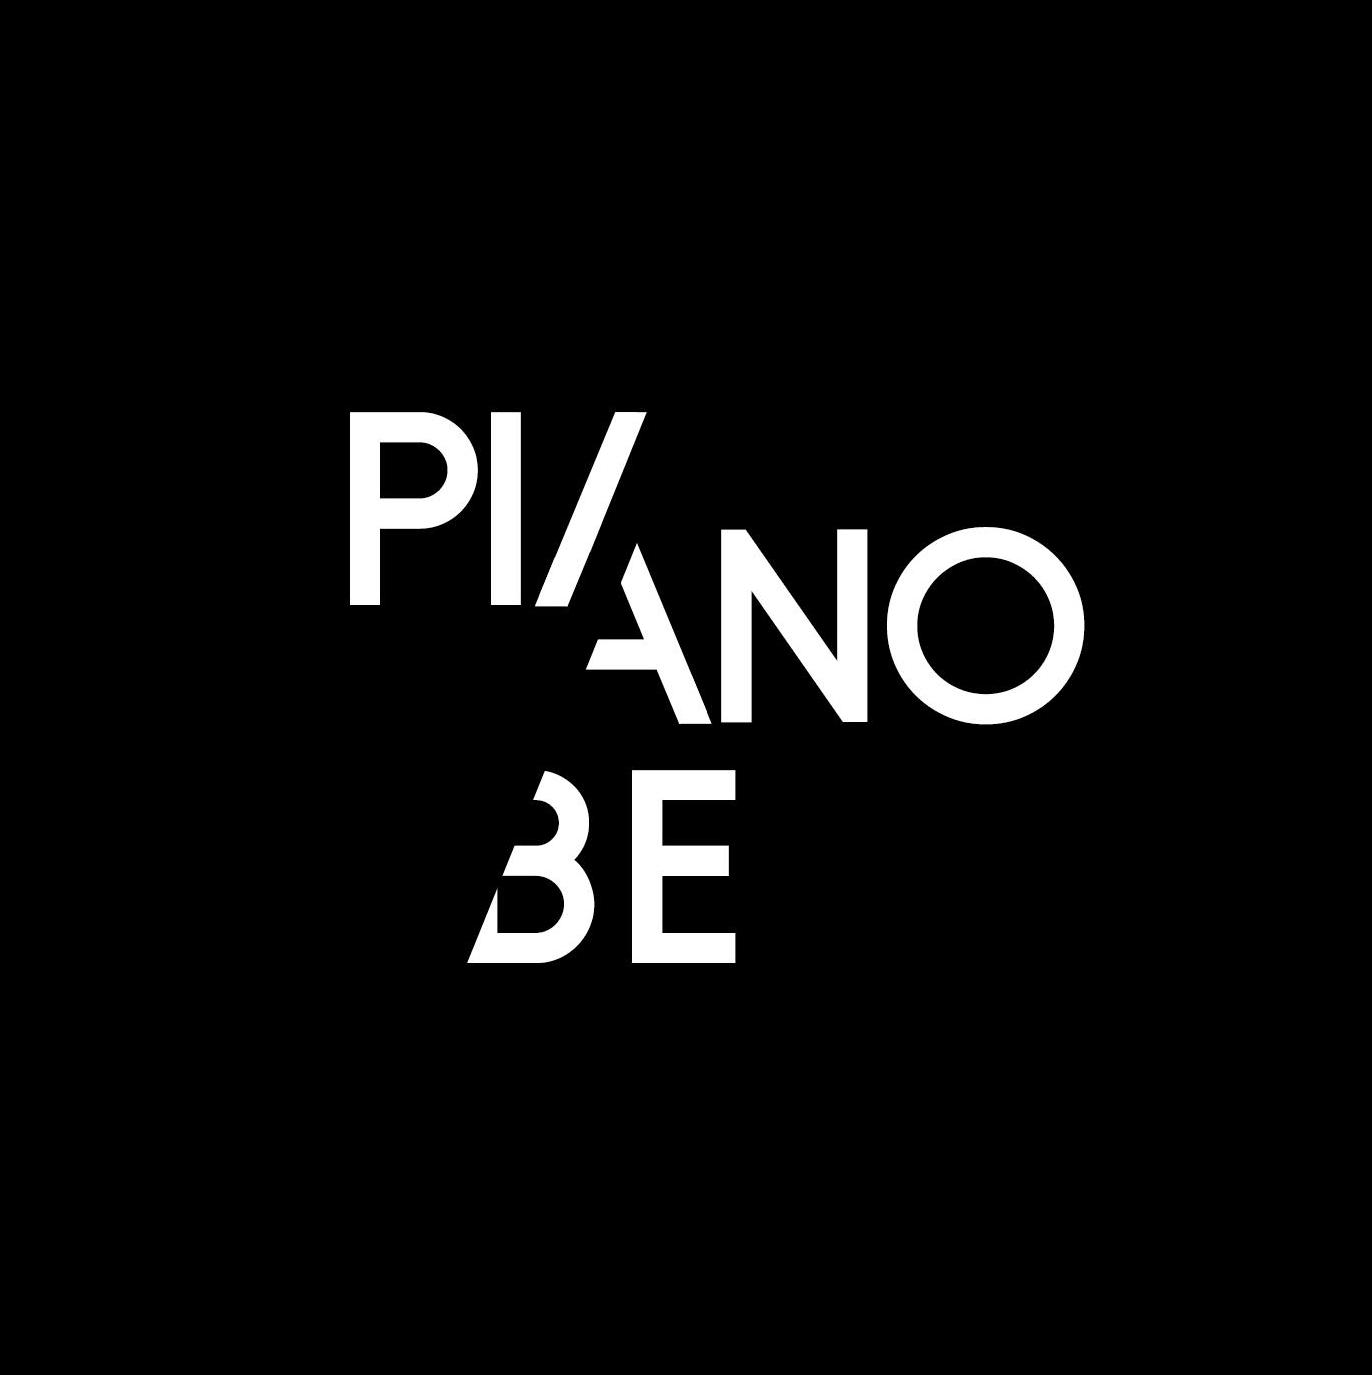 PianoBe